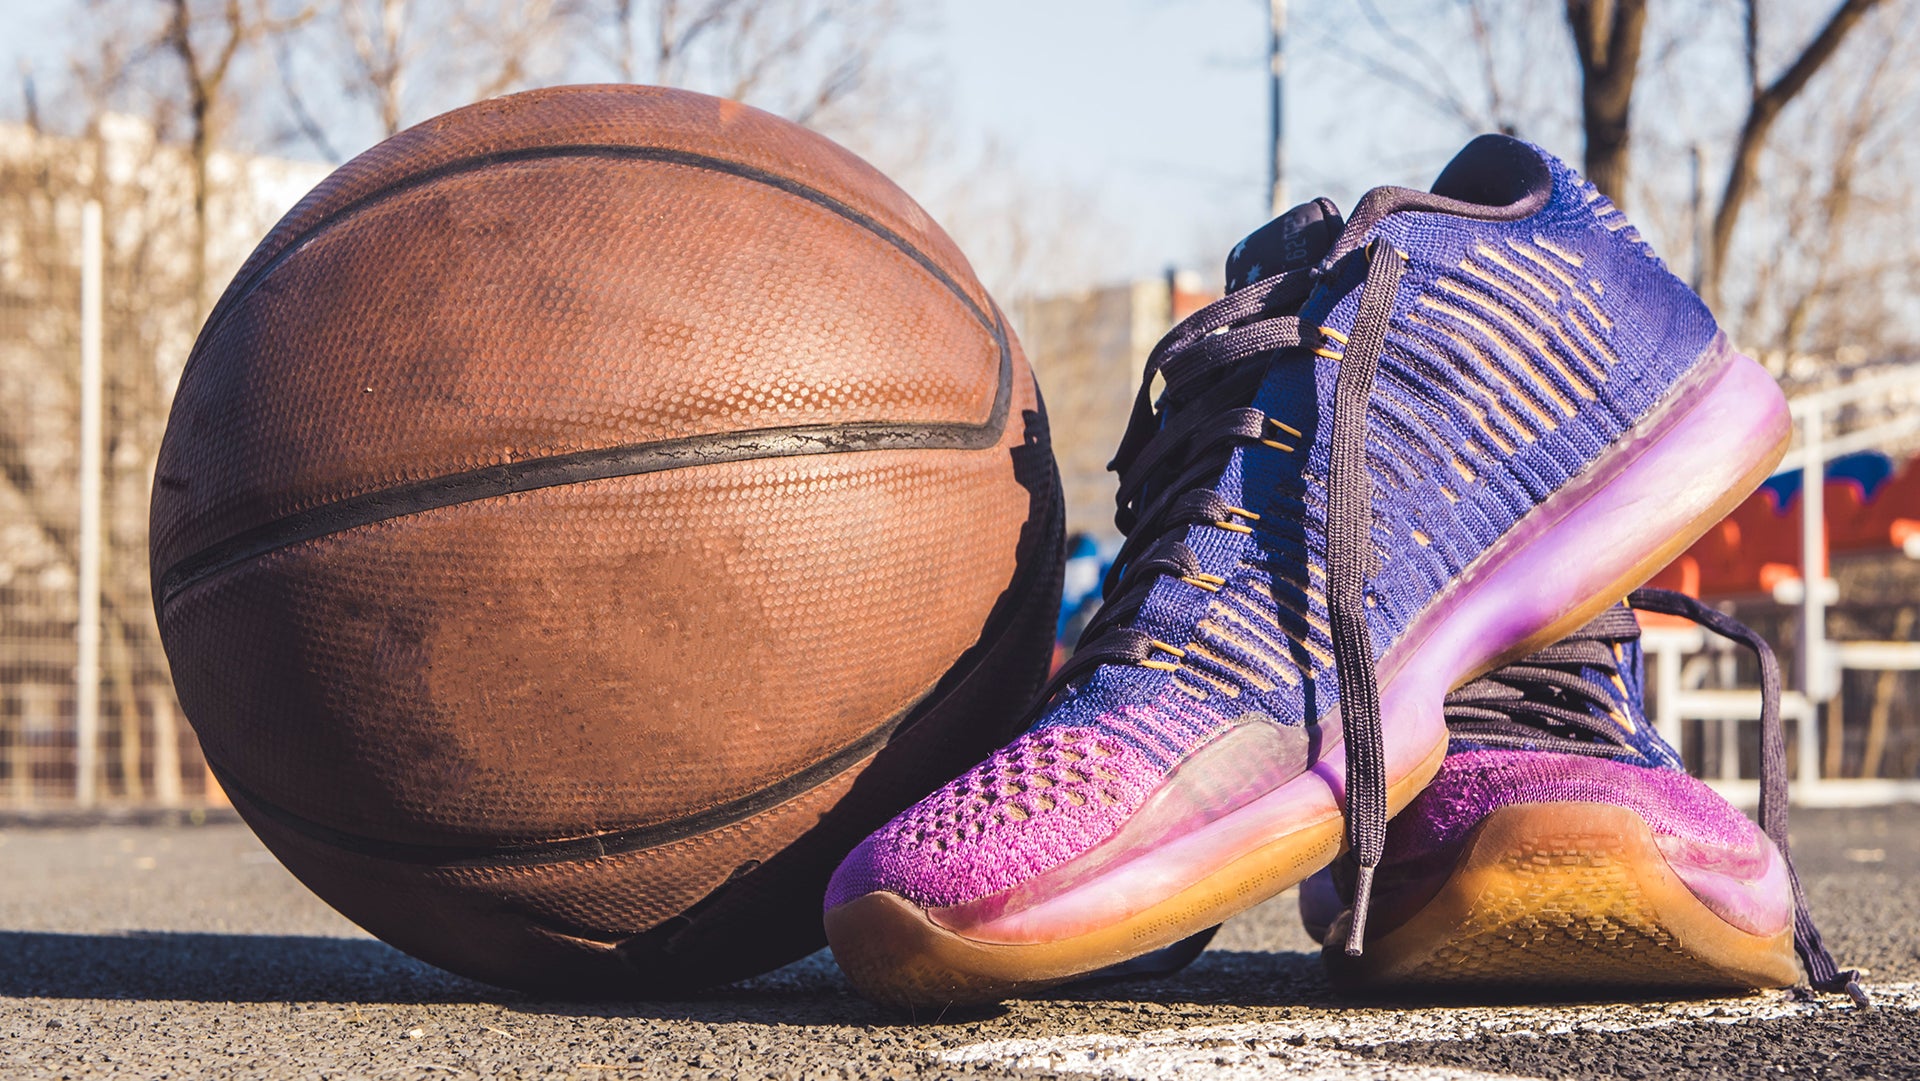 A violet sport shoes